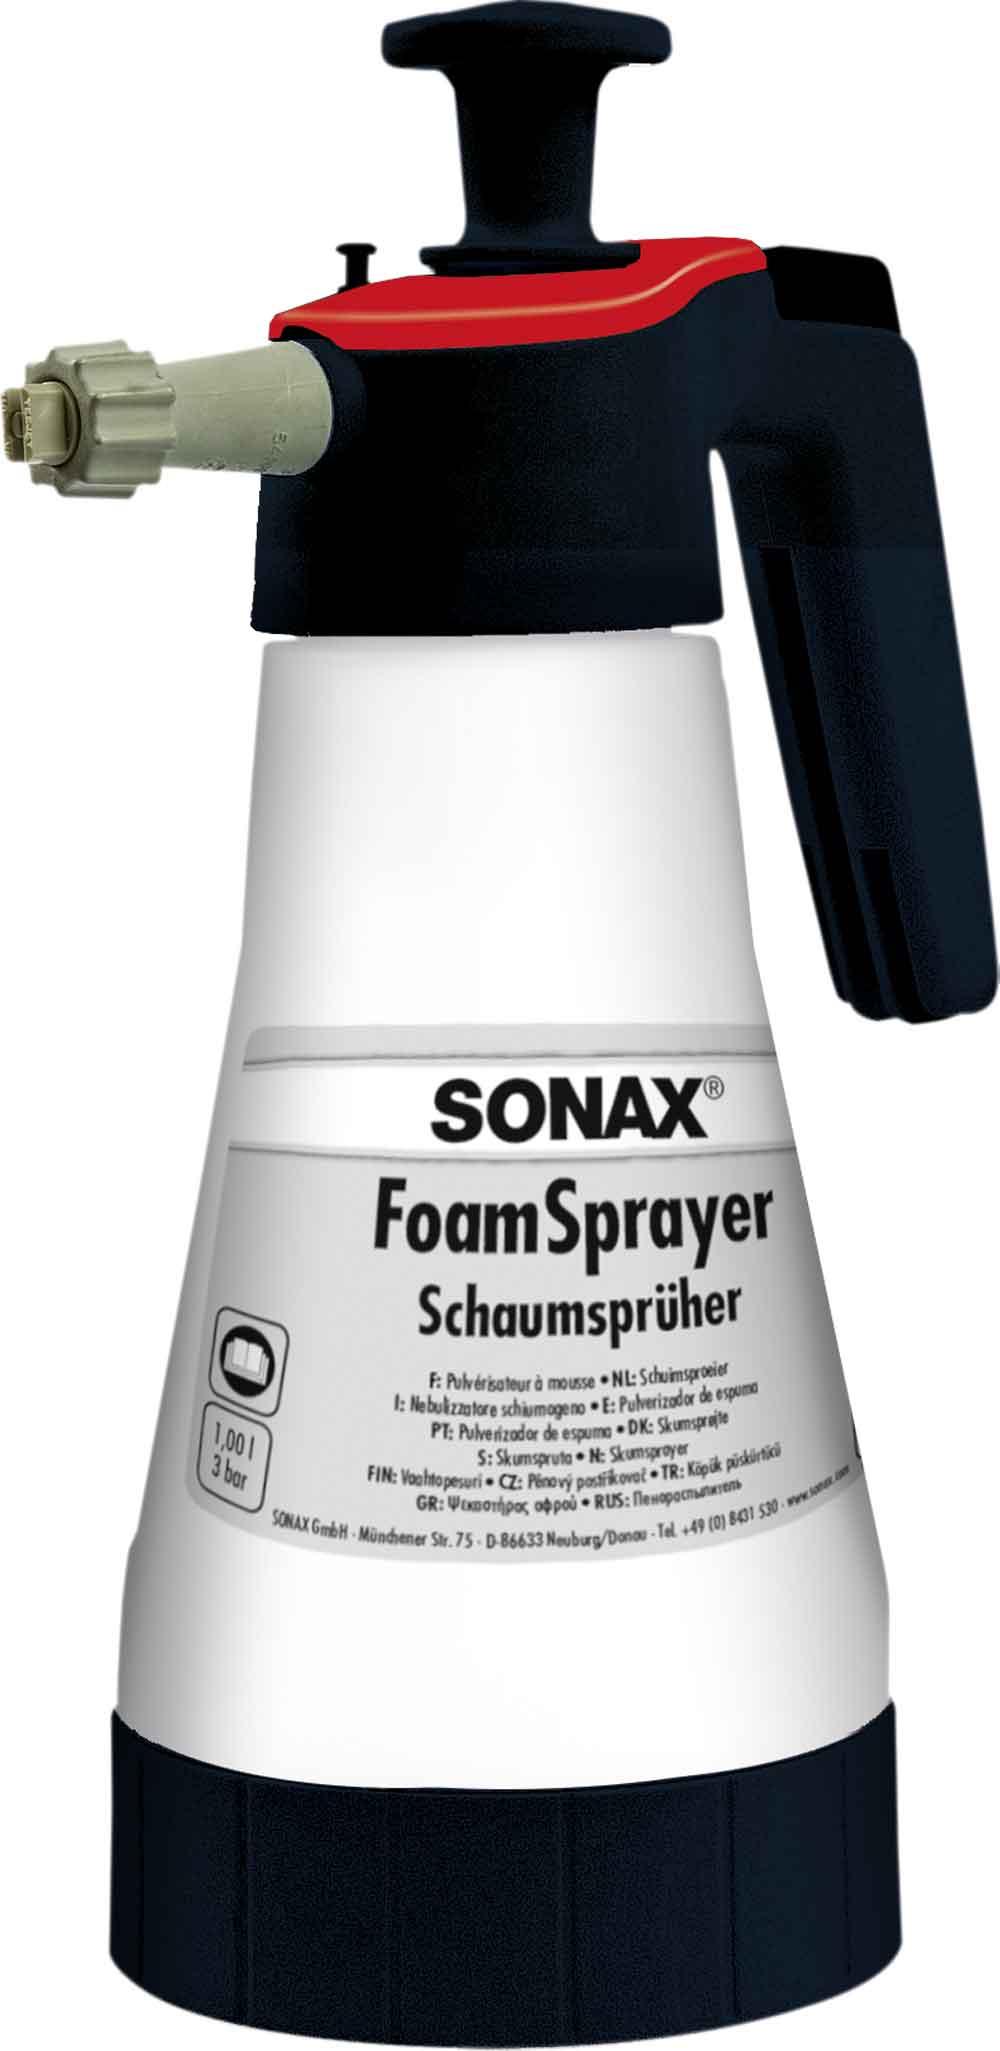 SONAX FoamSprayer 1l Schaumsprüher  XTREME RichFoam Shampoo 1